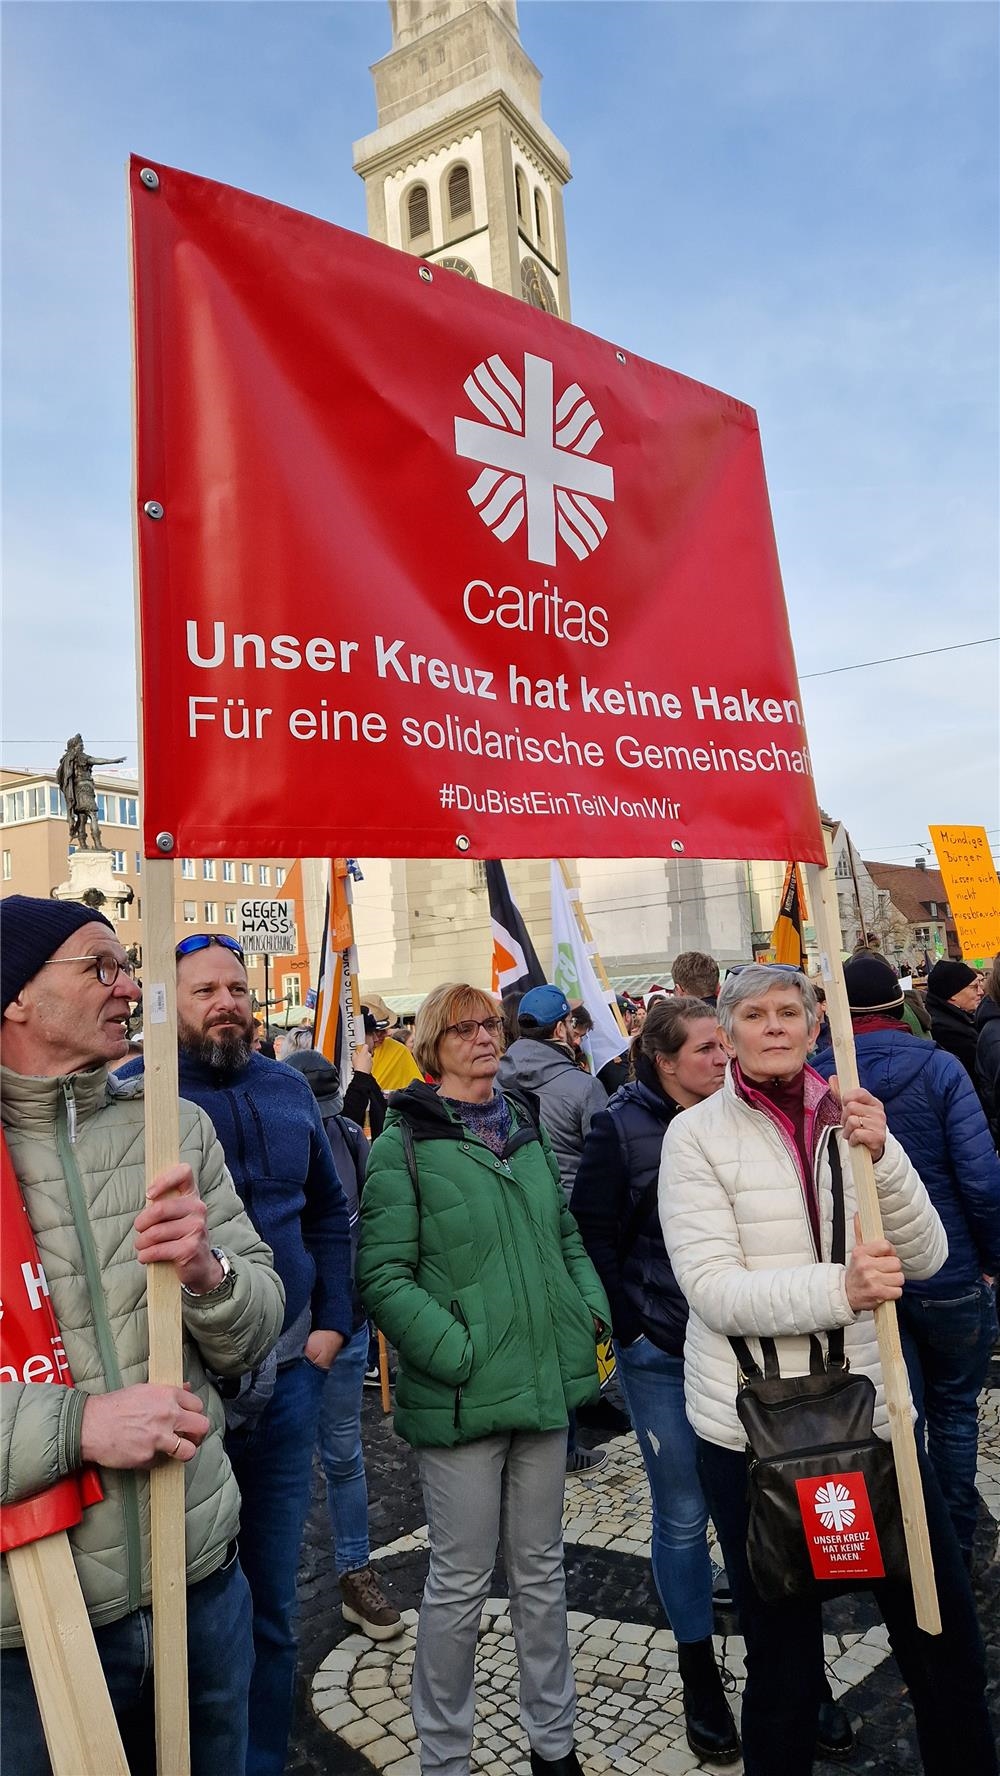 Caritas-Mitarbeiter*innen demonstratierten mit dem Banner Uner Kreuz hat keine Haken (Bernhard Gattner)